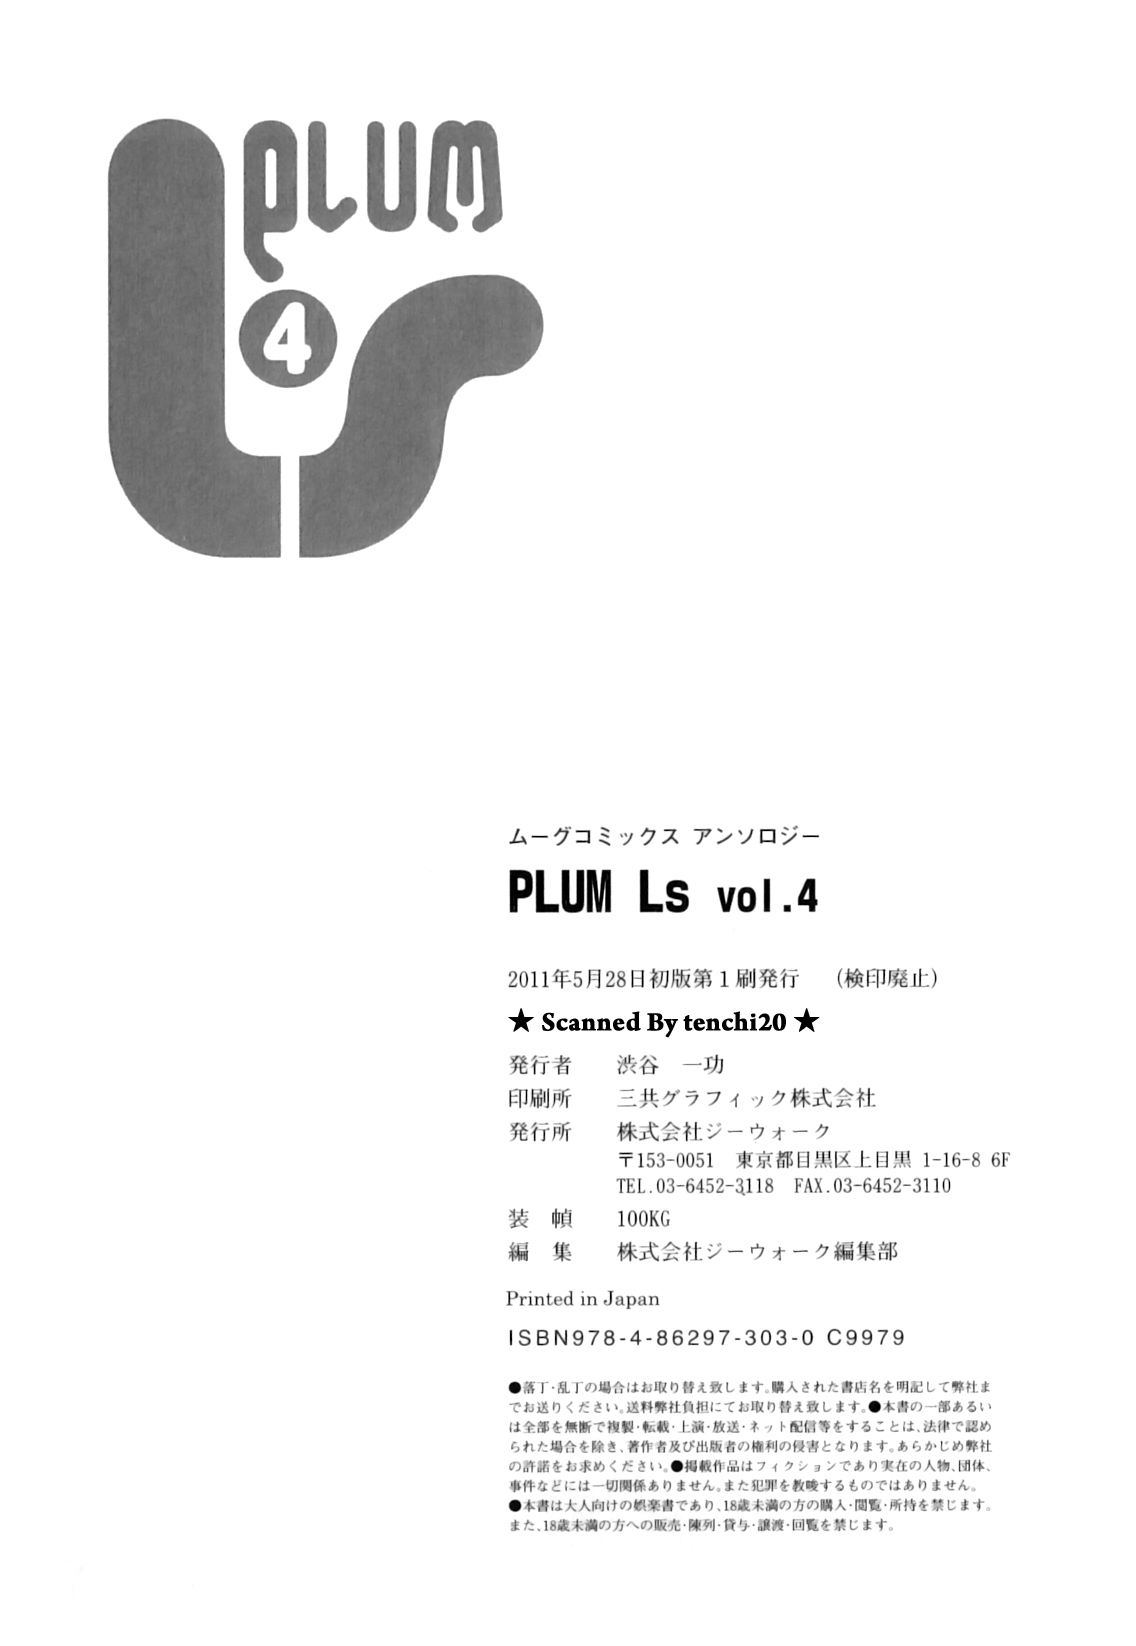 アンソロジー - PLUM LS 04 [2011-05-28]